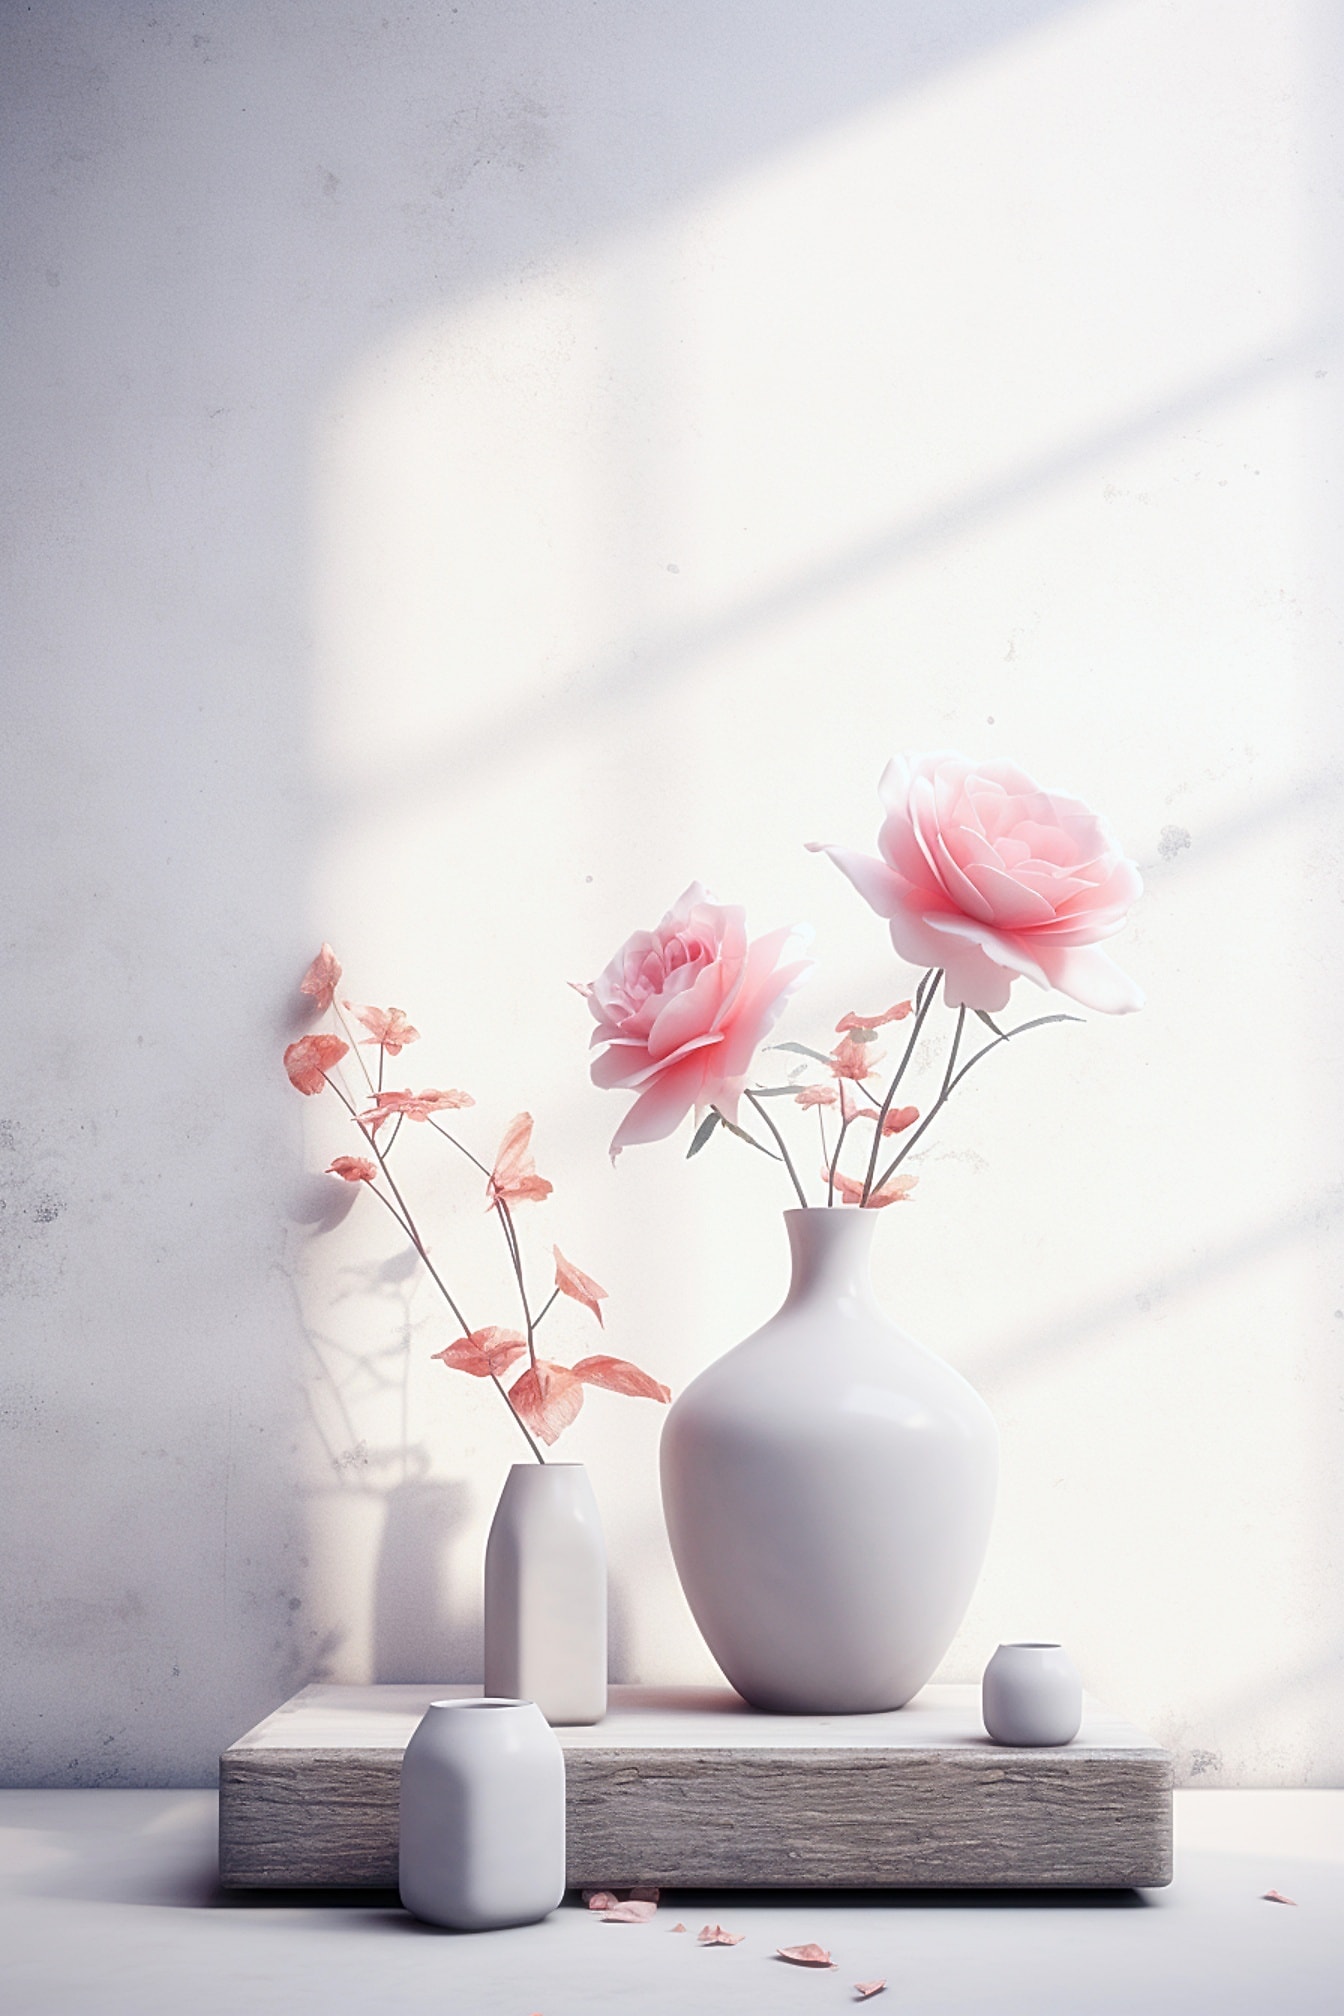 Vas keramik putih dengan bunga mawar merah muda di dalamnya